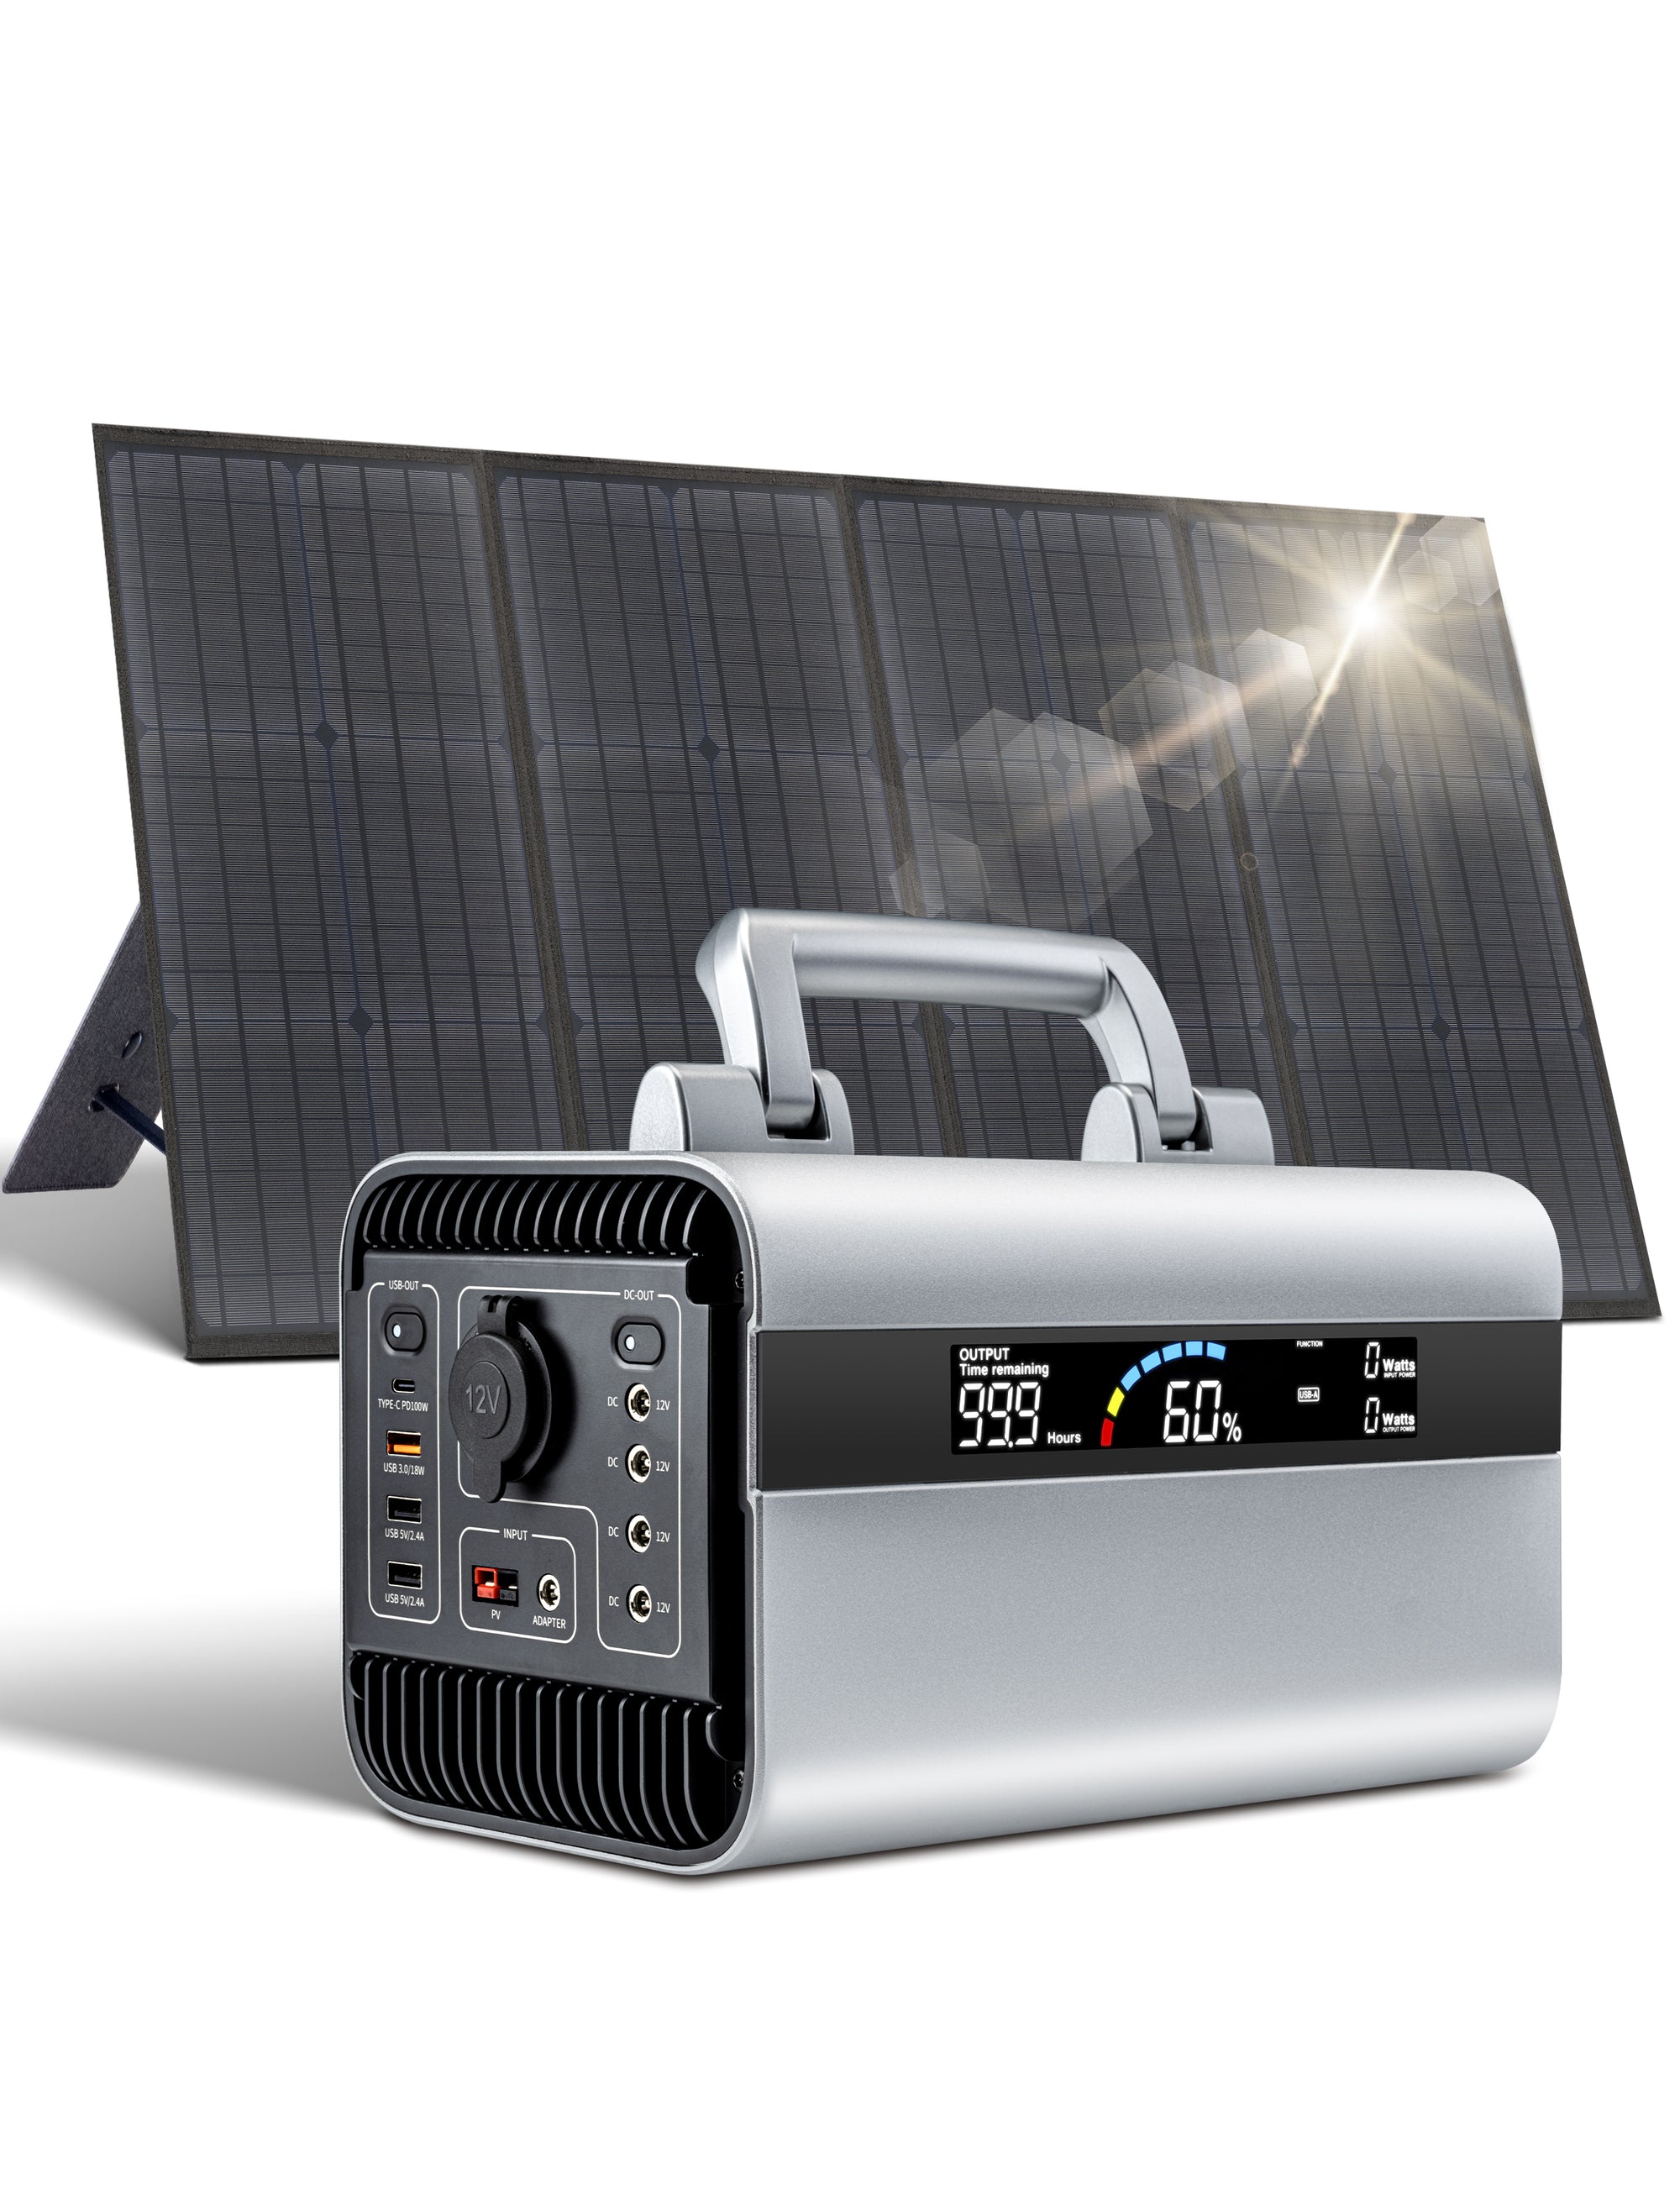 محطة طاقة محمولة بقوة 600 واط مع مولد شمسي بقوة 120 واط مع لوحات شمسية للتخييم في الهواء الطلق، والرحلات القصيرة، وانقطاع التيار الكهربائي